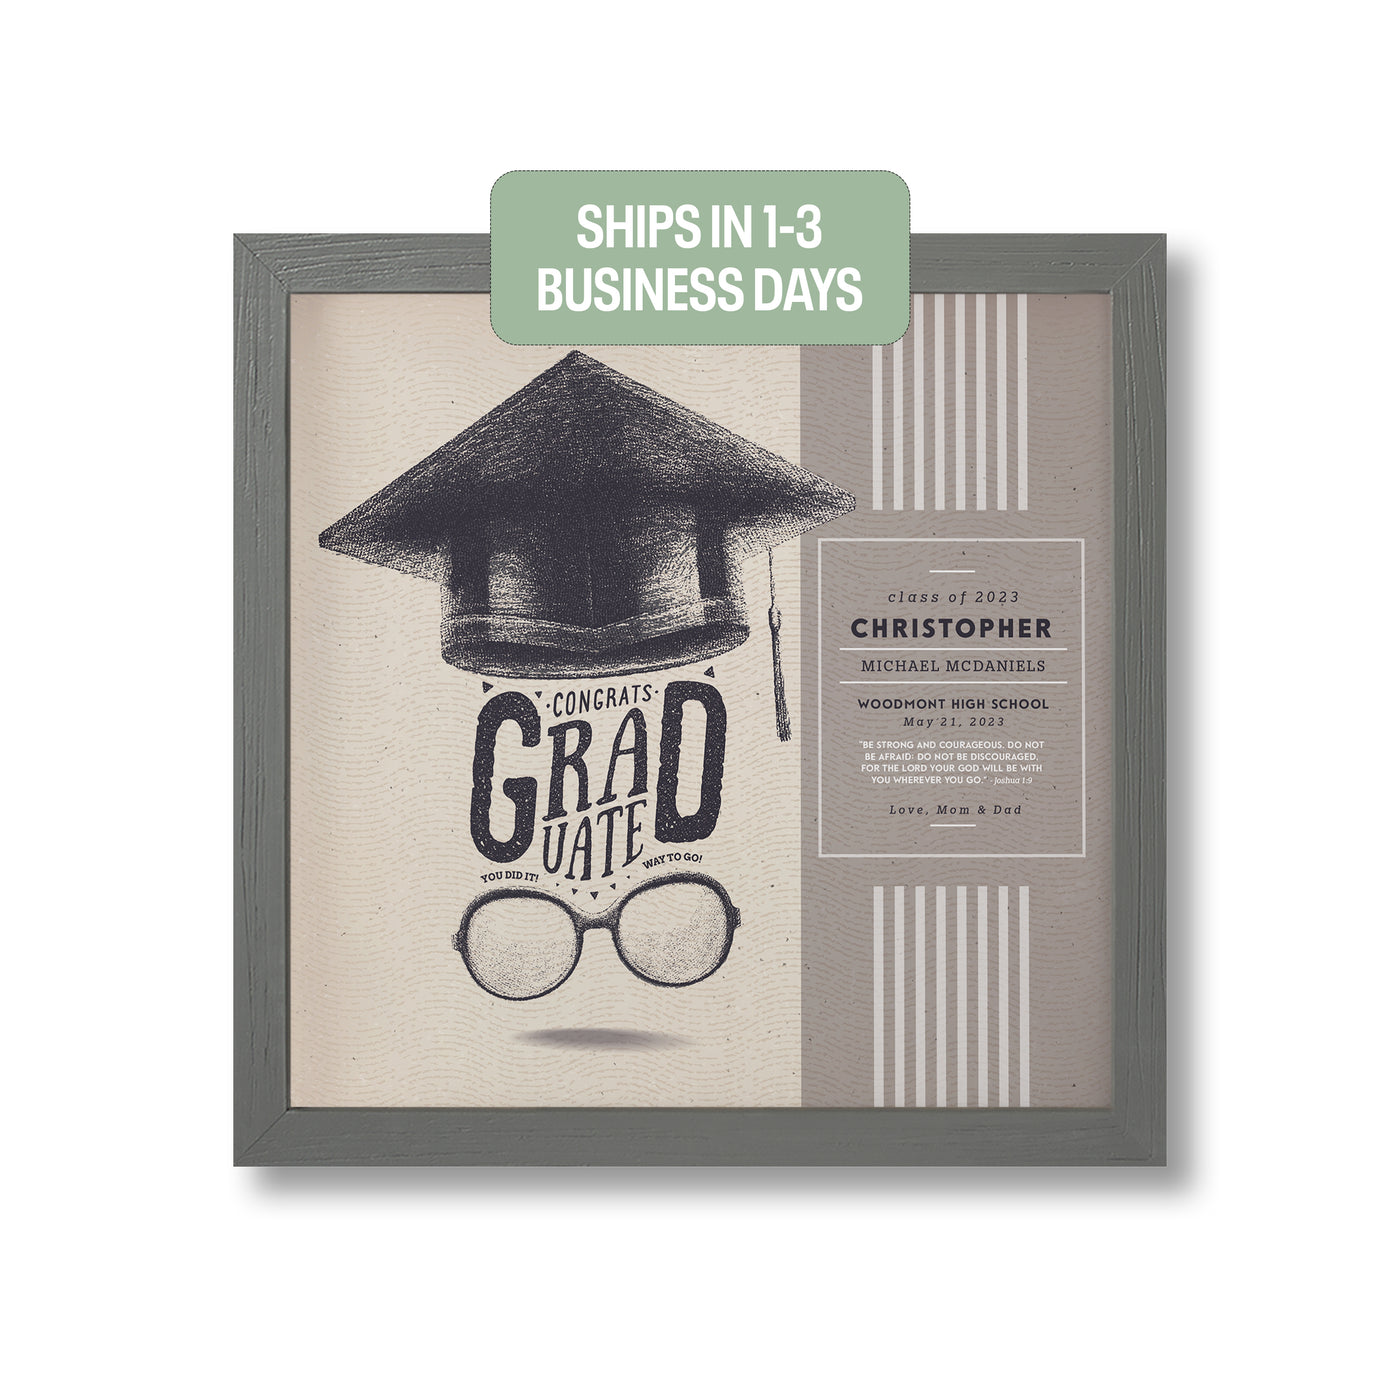 Congrats Grad Cap | Commemoration Print, Framed Print